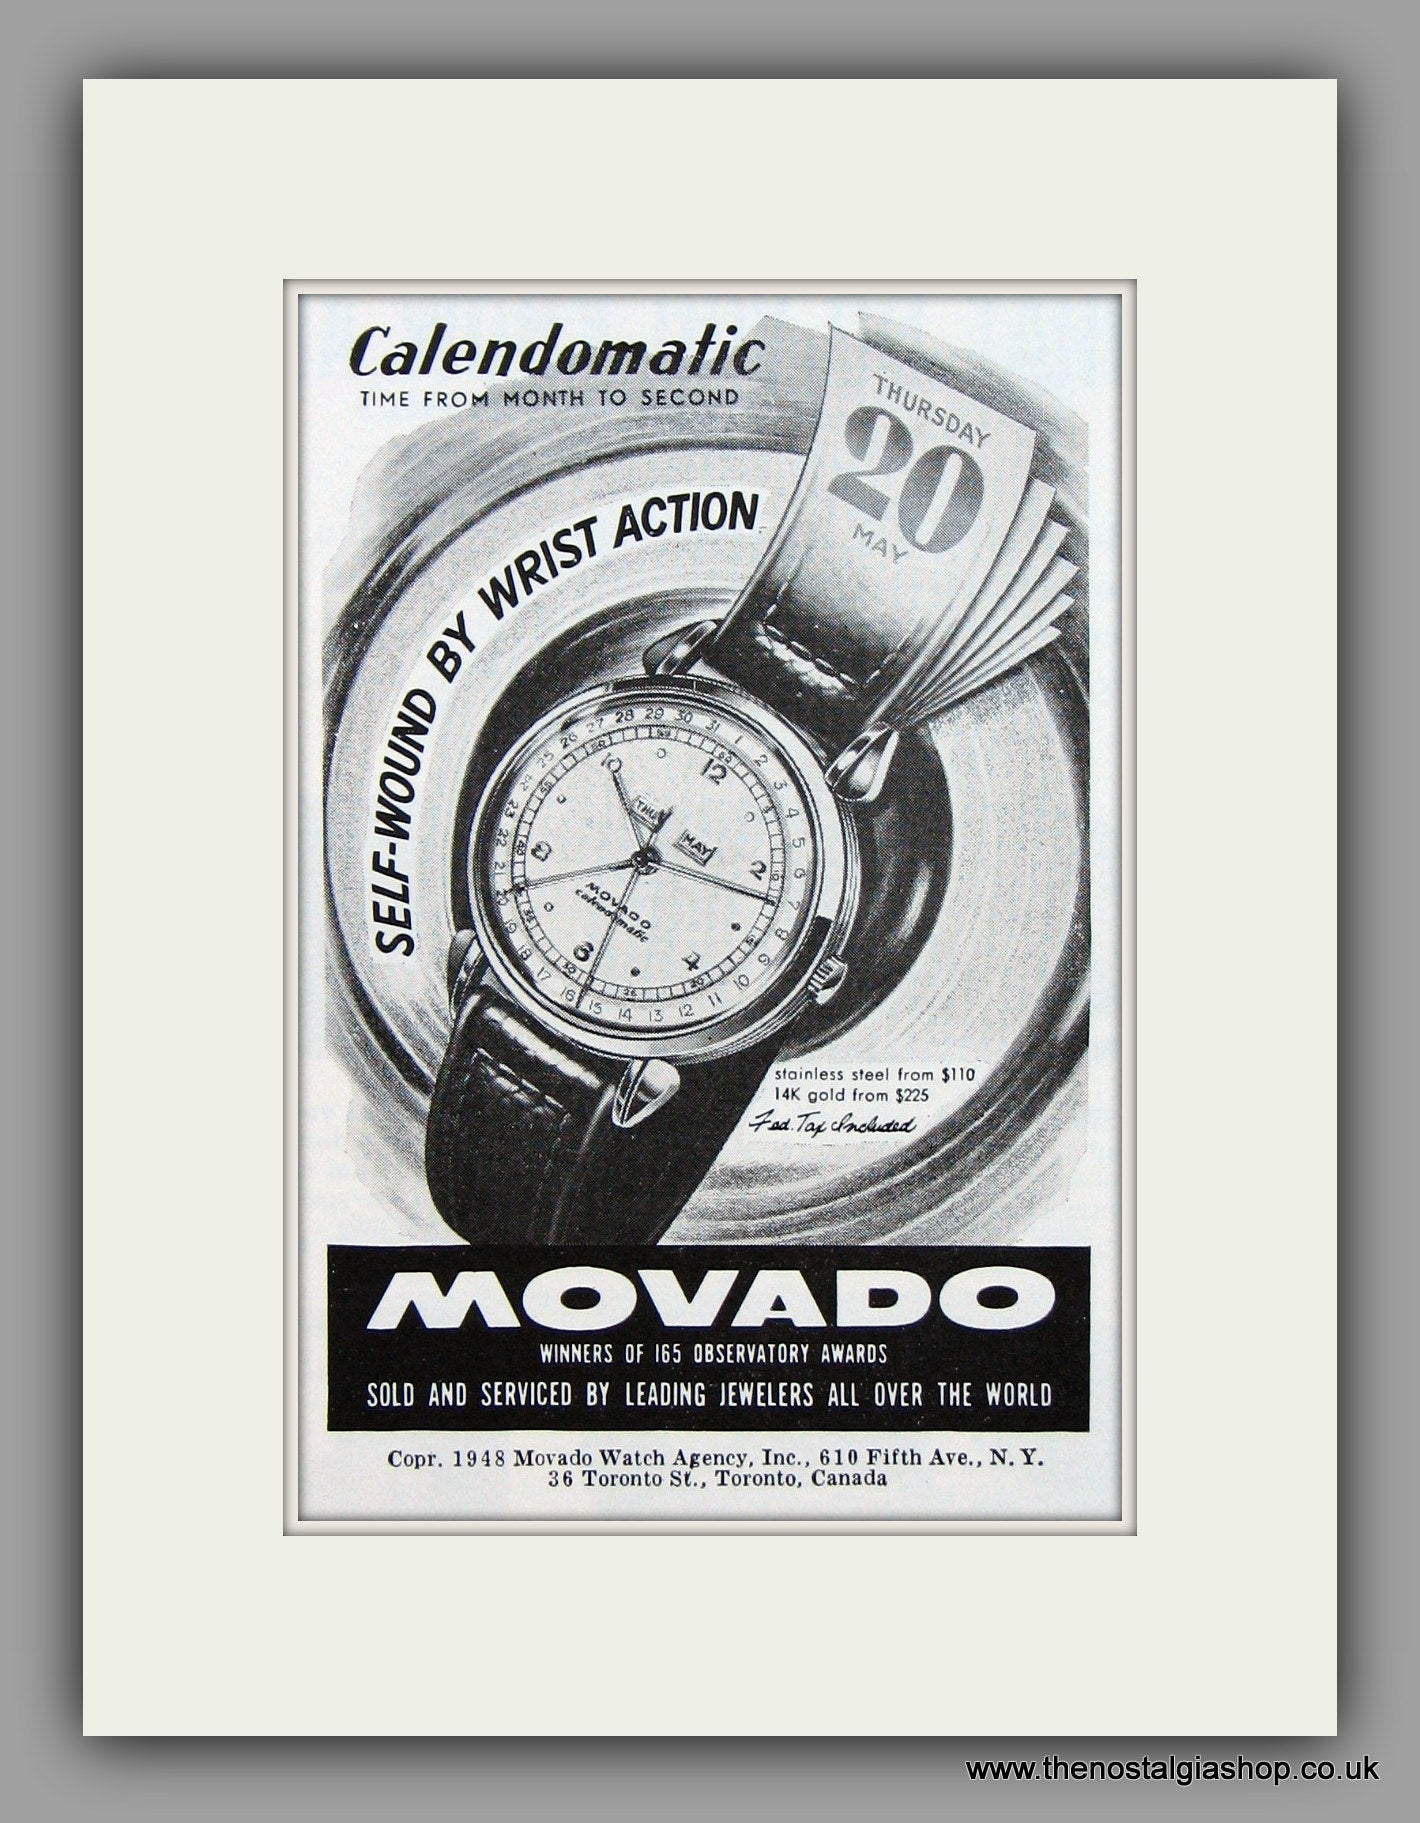 Movado Calendomatic Watches. 1948 Original Vintage Advert  (ref AD7944)